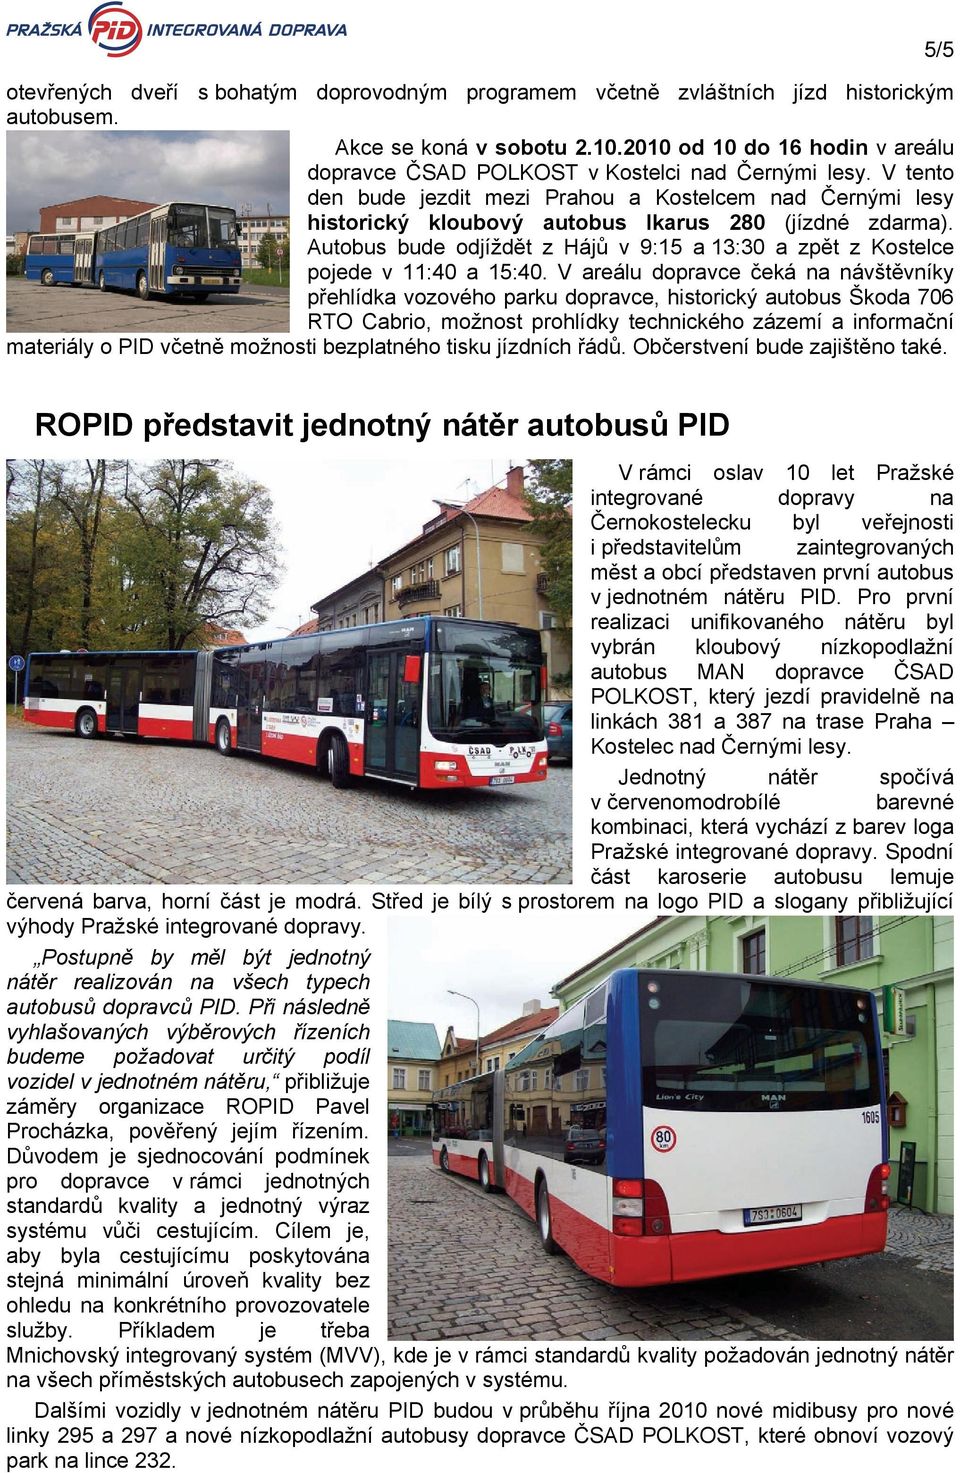 V tento den bude jezdit mezi Prahou a Kostelcem nad Černými lesy historický kloubový autobus Ikarus 280 (jízdné zdarma).